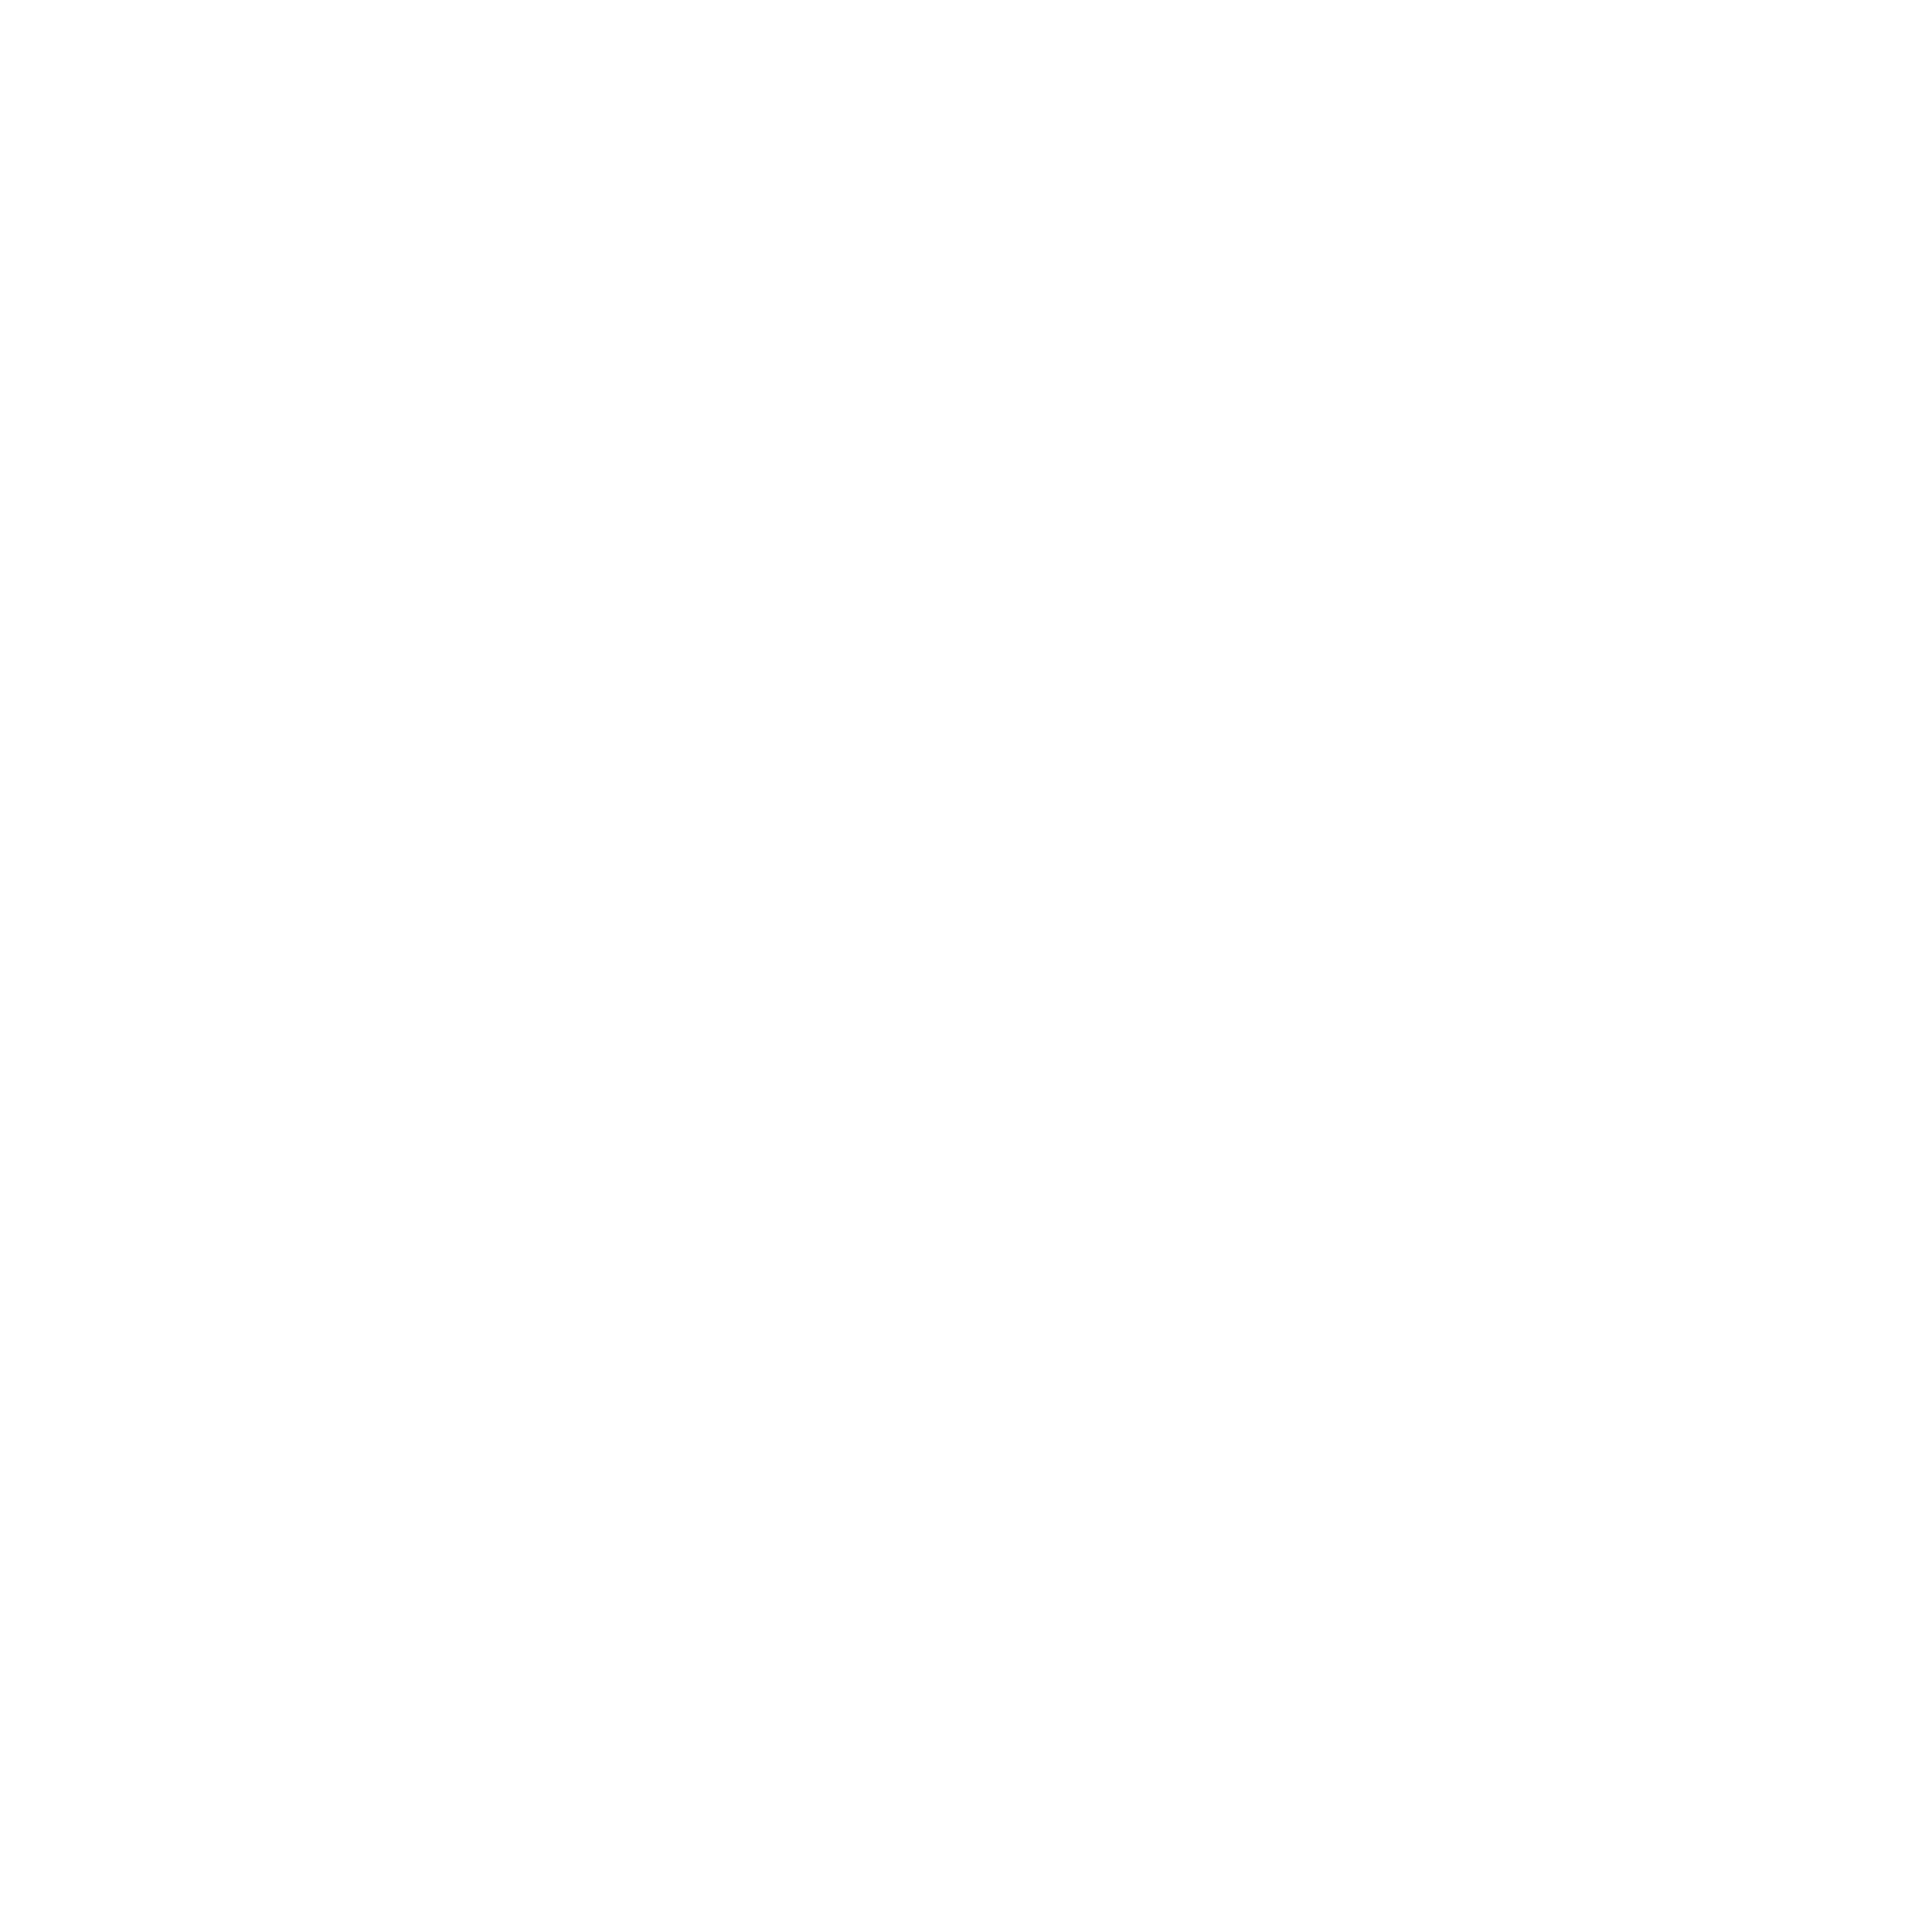 一站式服務Icon: 一隻手指頭上面有發光作為透過居安一條龍式科技服務。讓客戶事半功倍